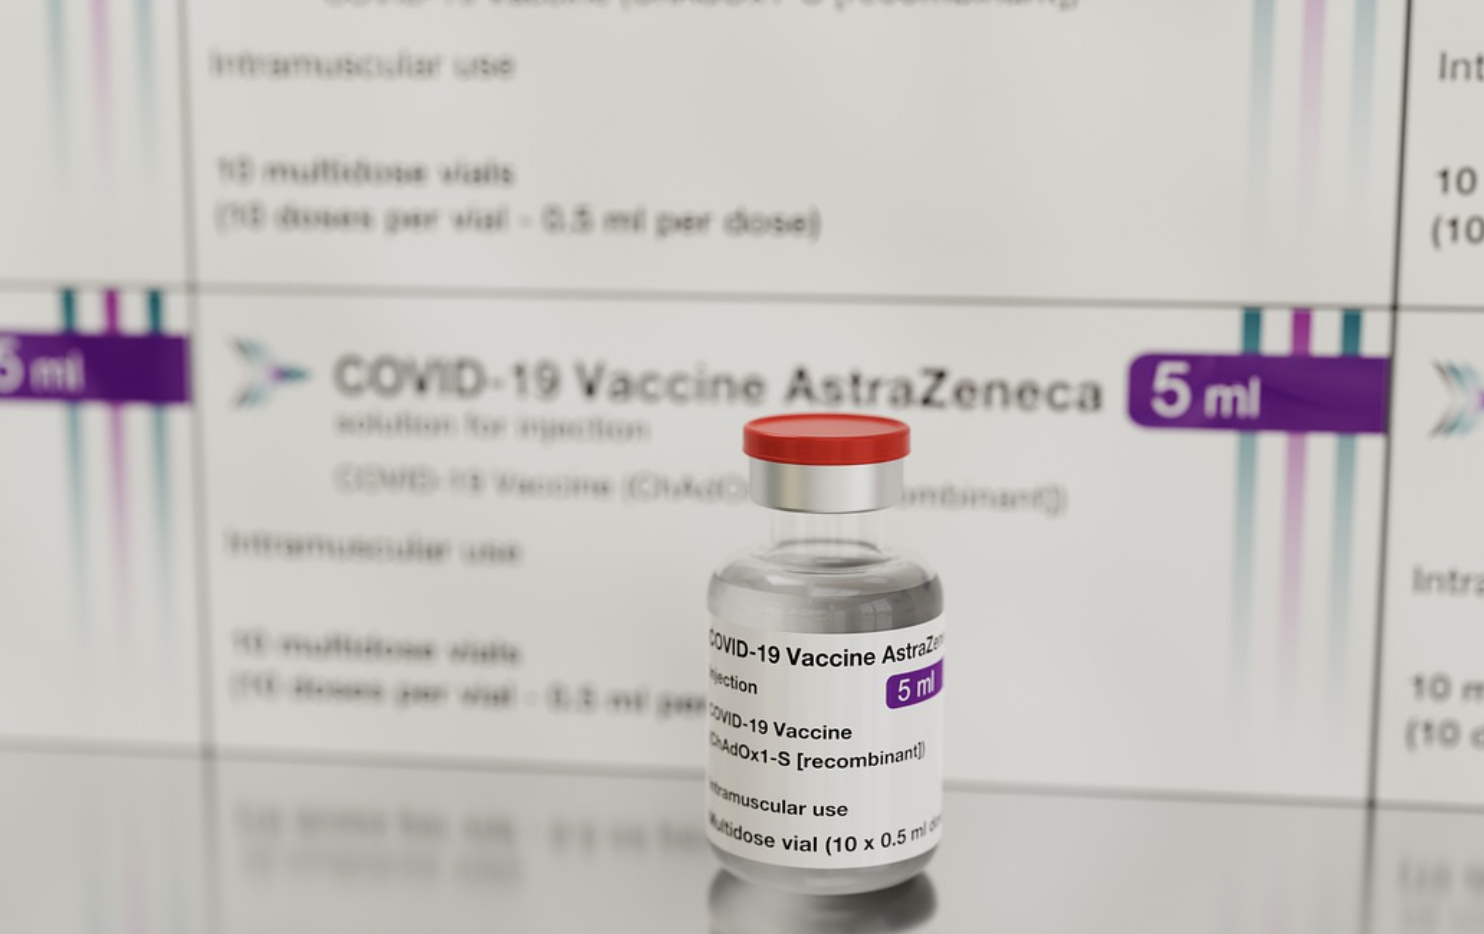 Vaccinul AstraZeneca a ajuns la Polul Sud după o călătorie de 16.000 km